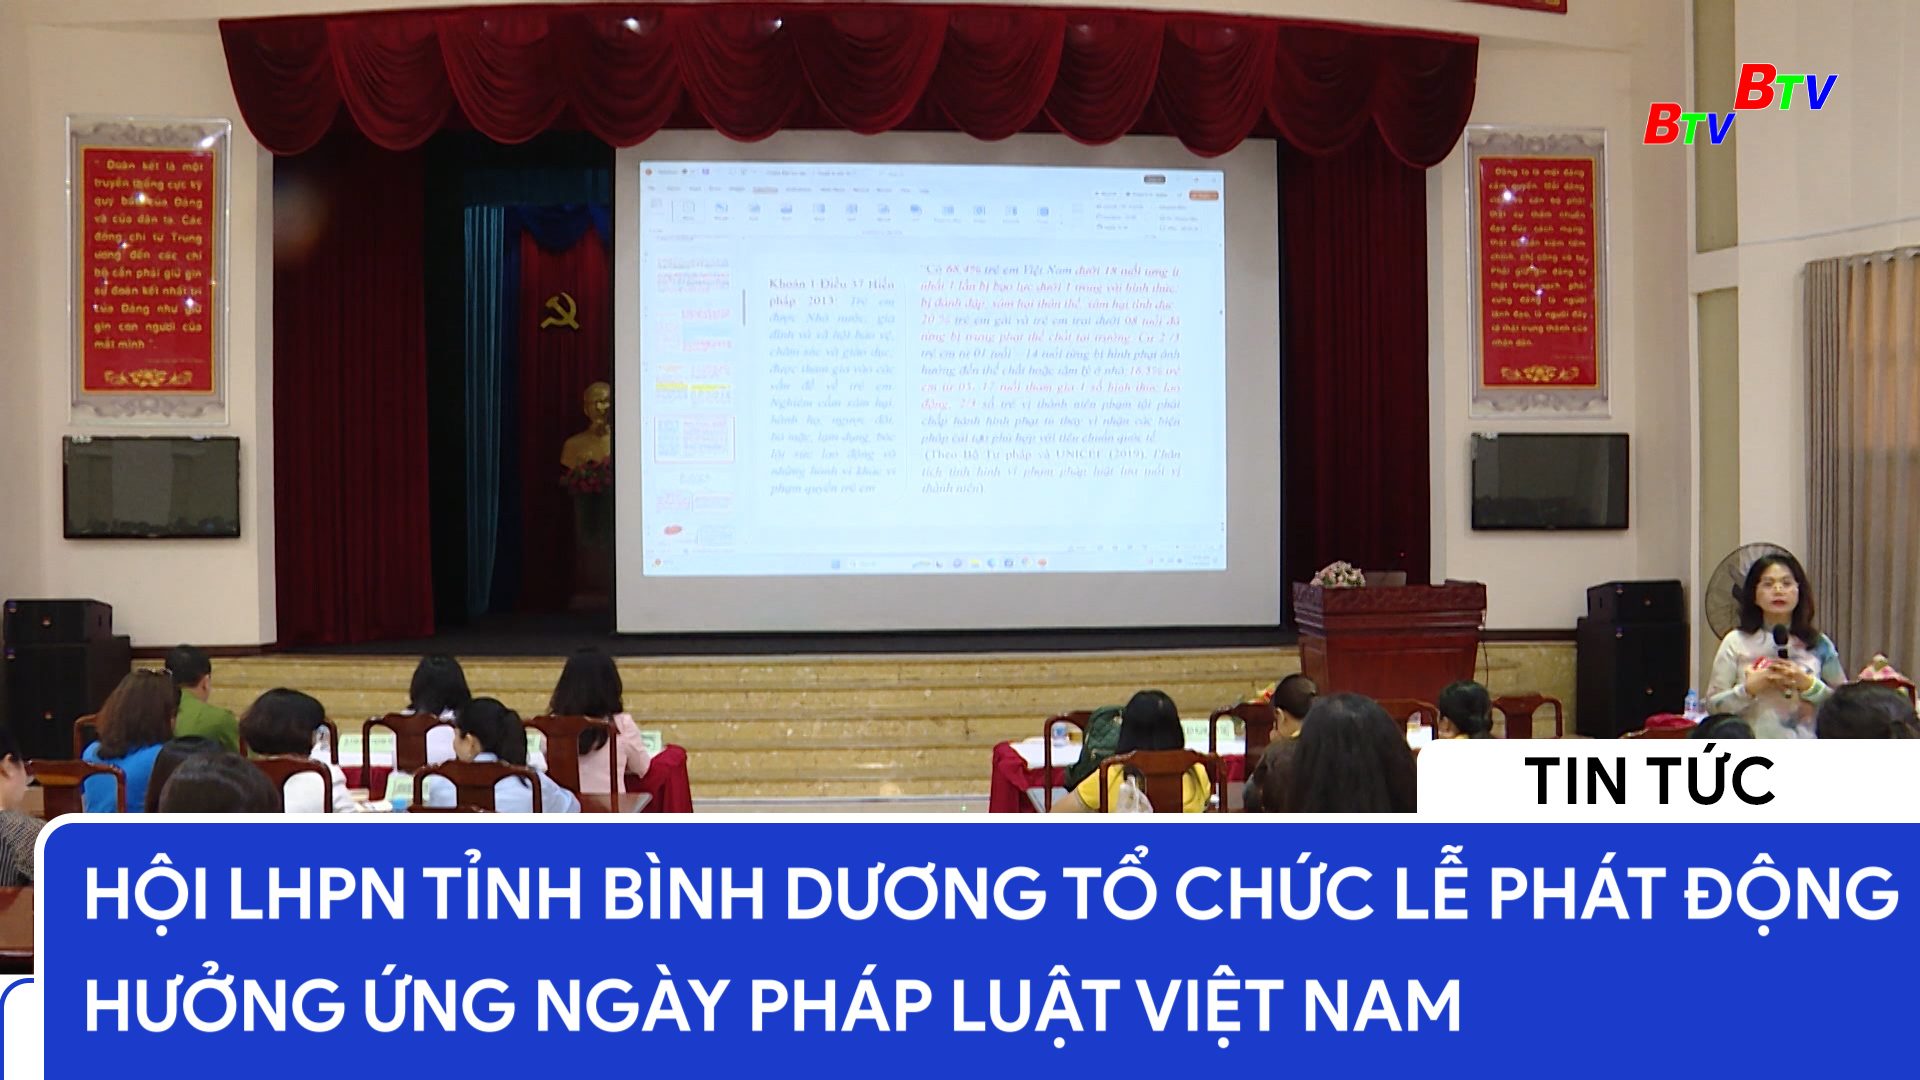 Hội LHPN tỉnh Bình Dương tổ chức lễ phát động hưởng ứng ngày pháp luật Việt Nam